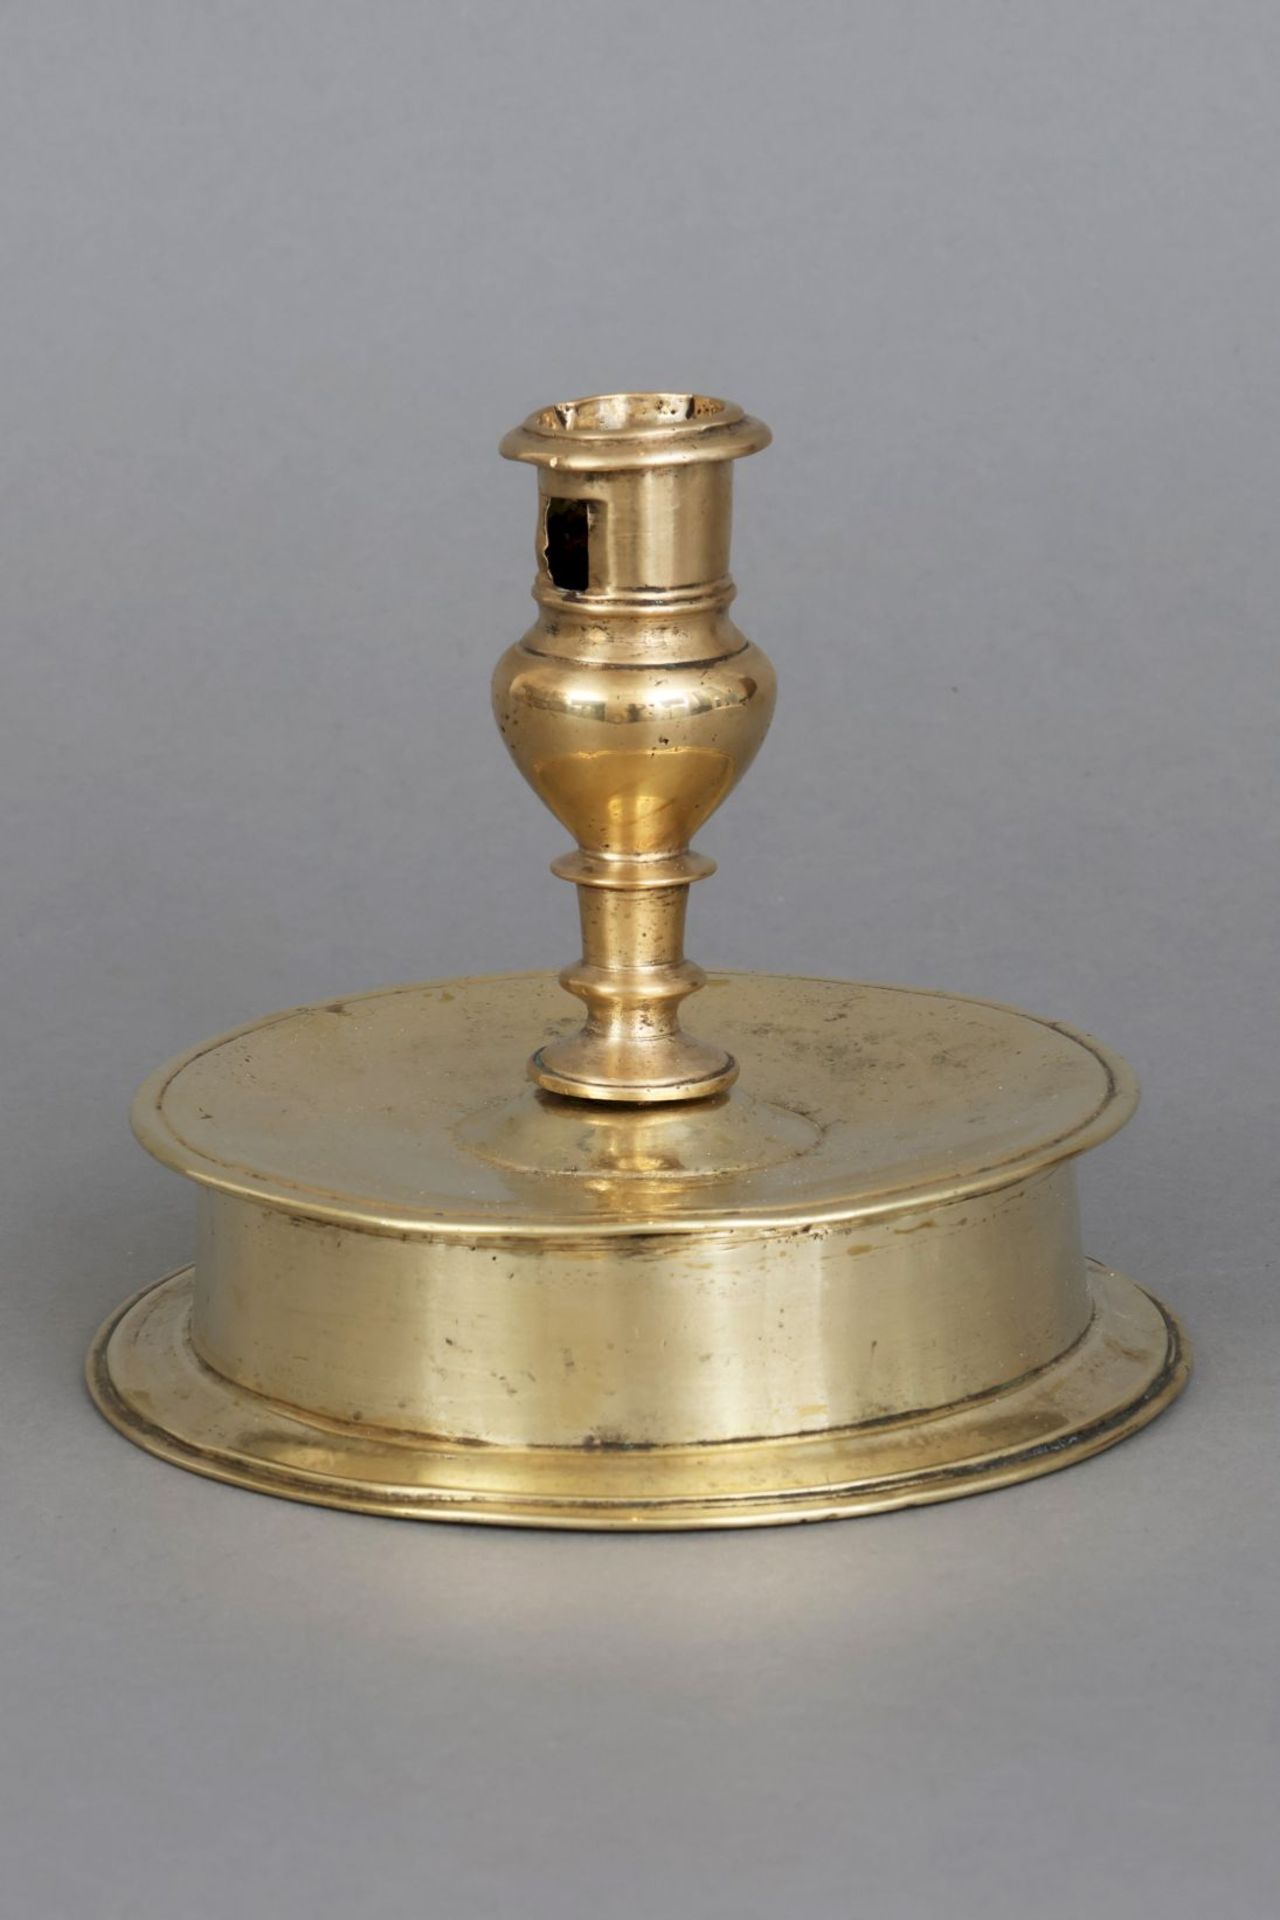 Glockenfußleuchter des 17. Jahrhunderts